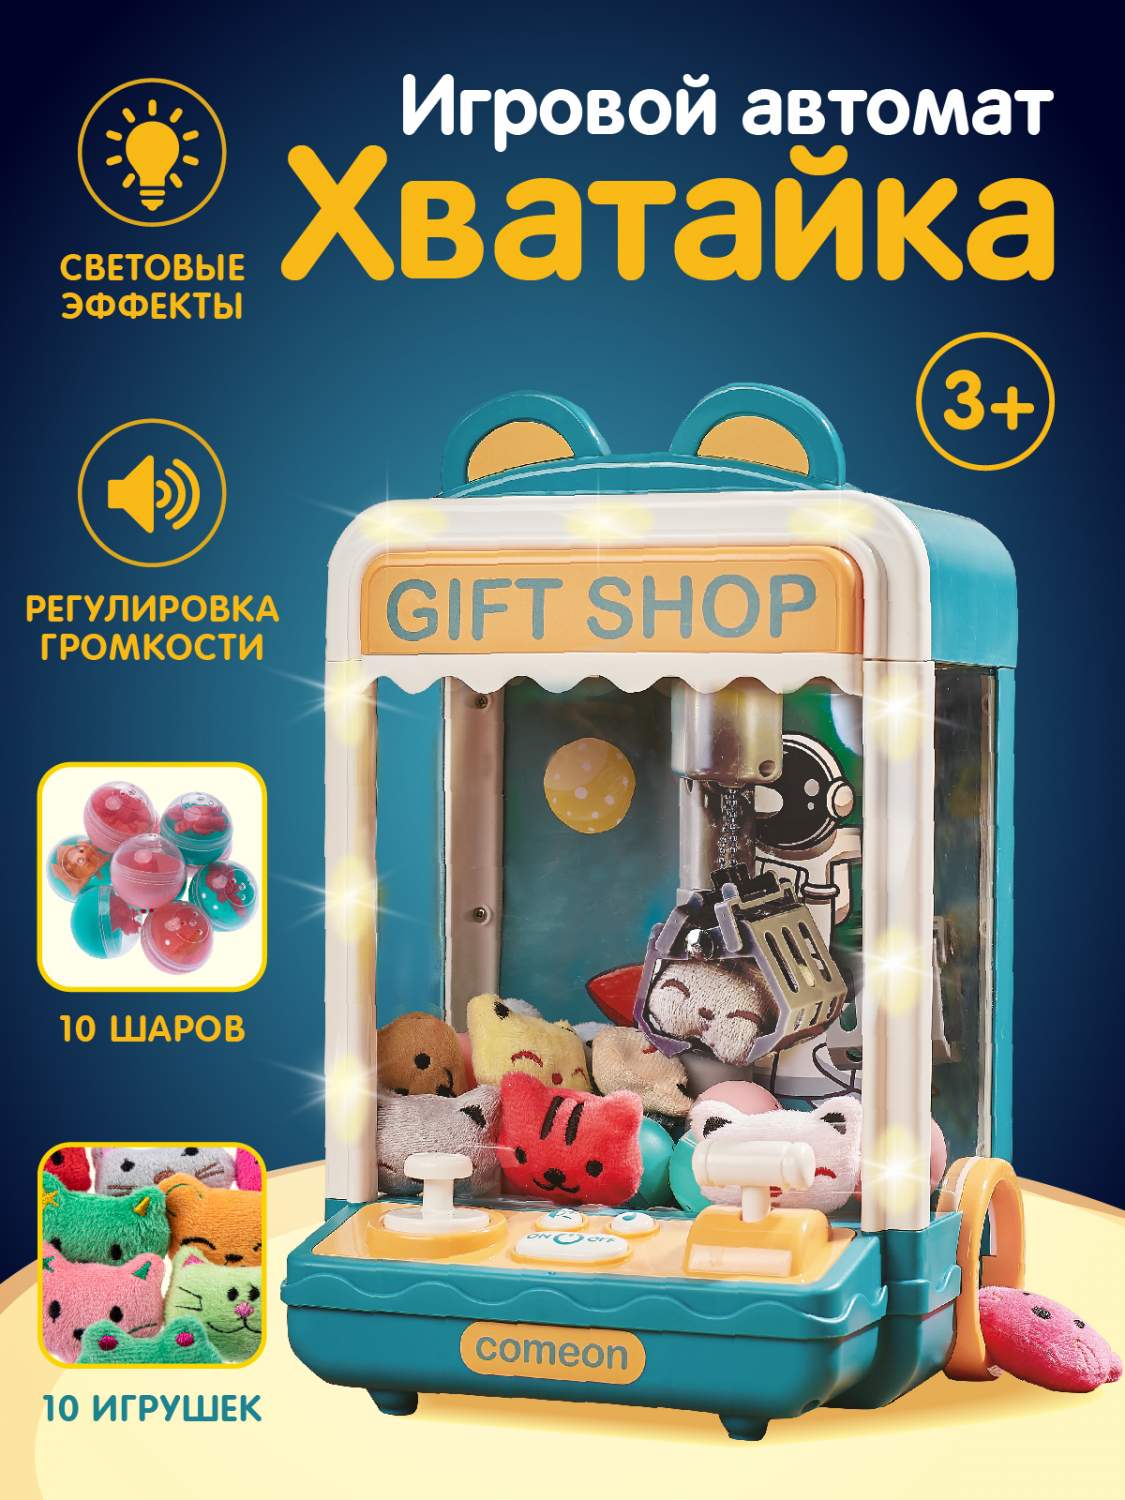 Игрушки продажа, цена в Минске